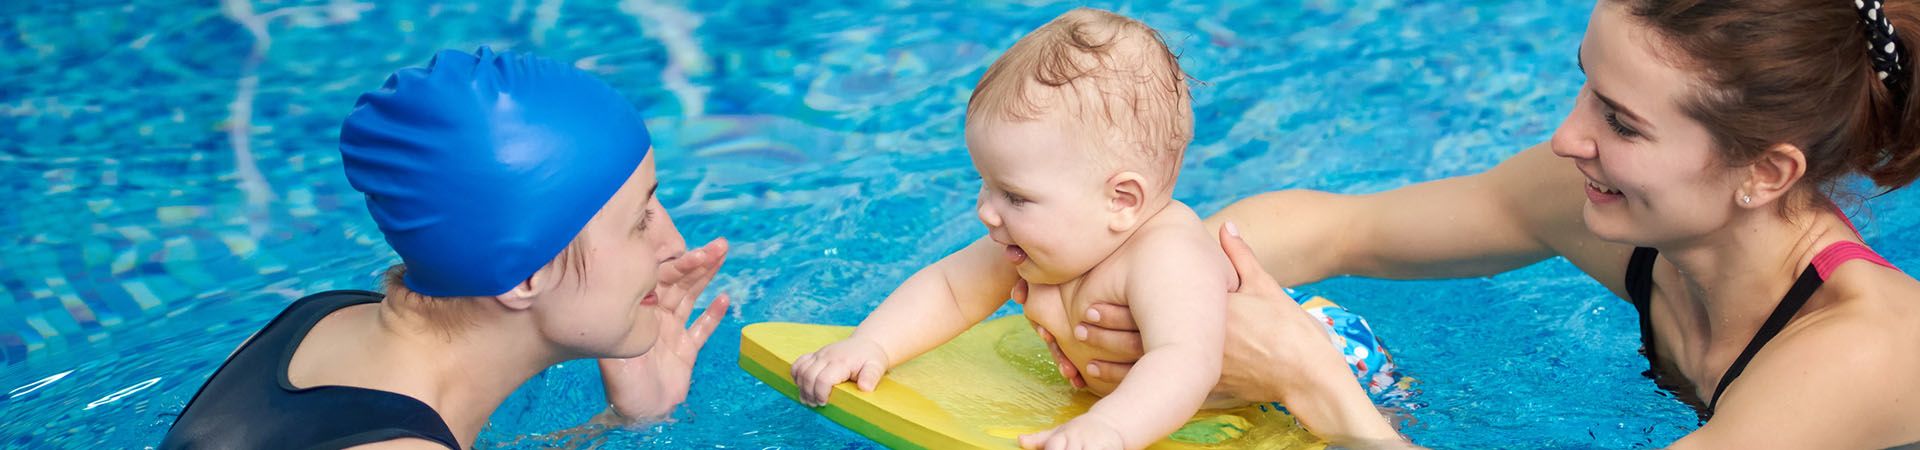 Une mère et un bébé savourent un moment de tendresse lors d’une baignade à la piscine